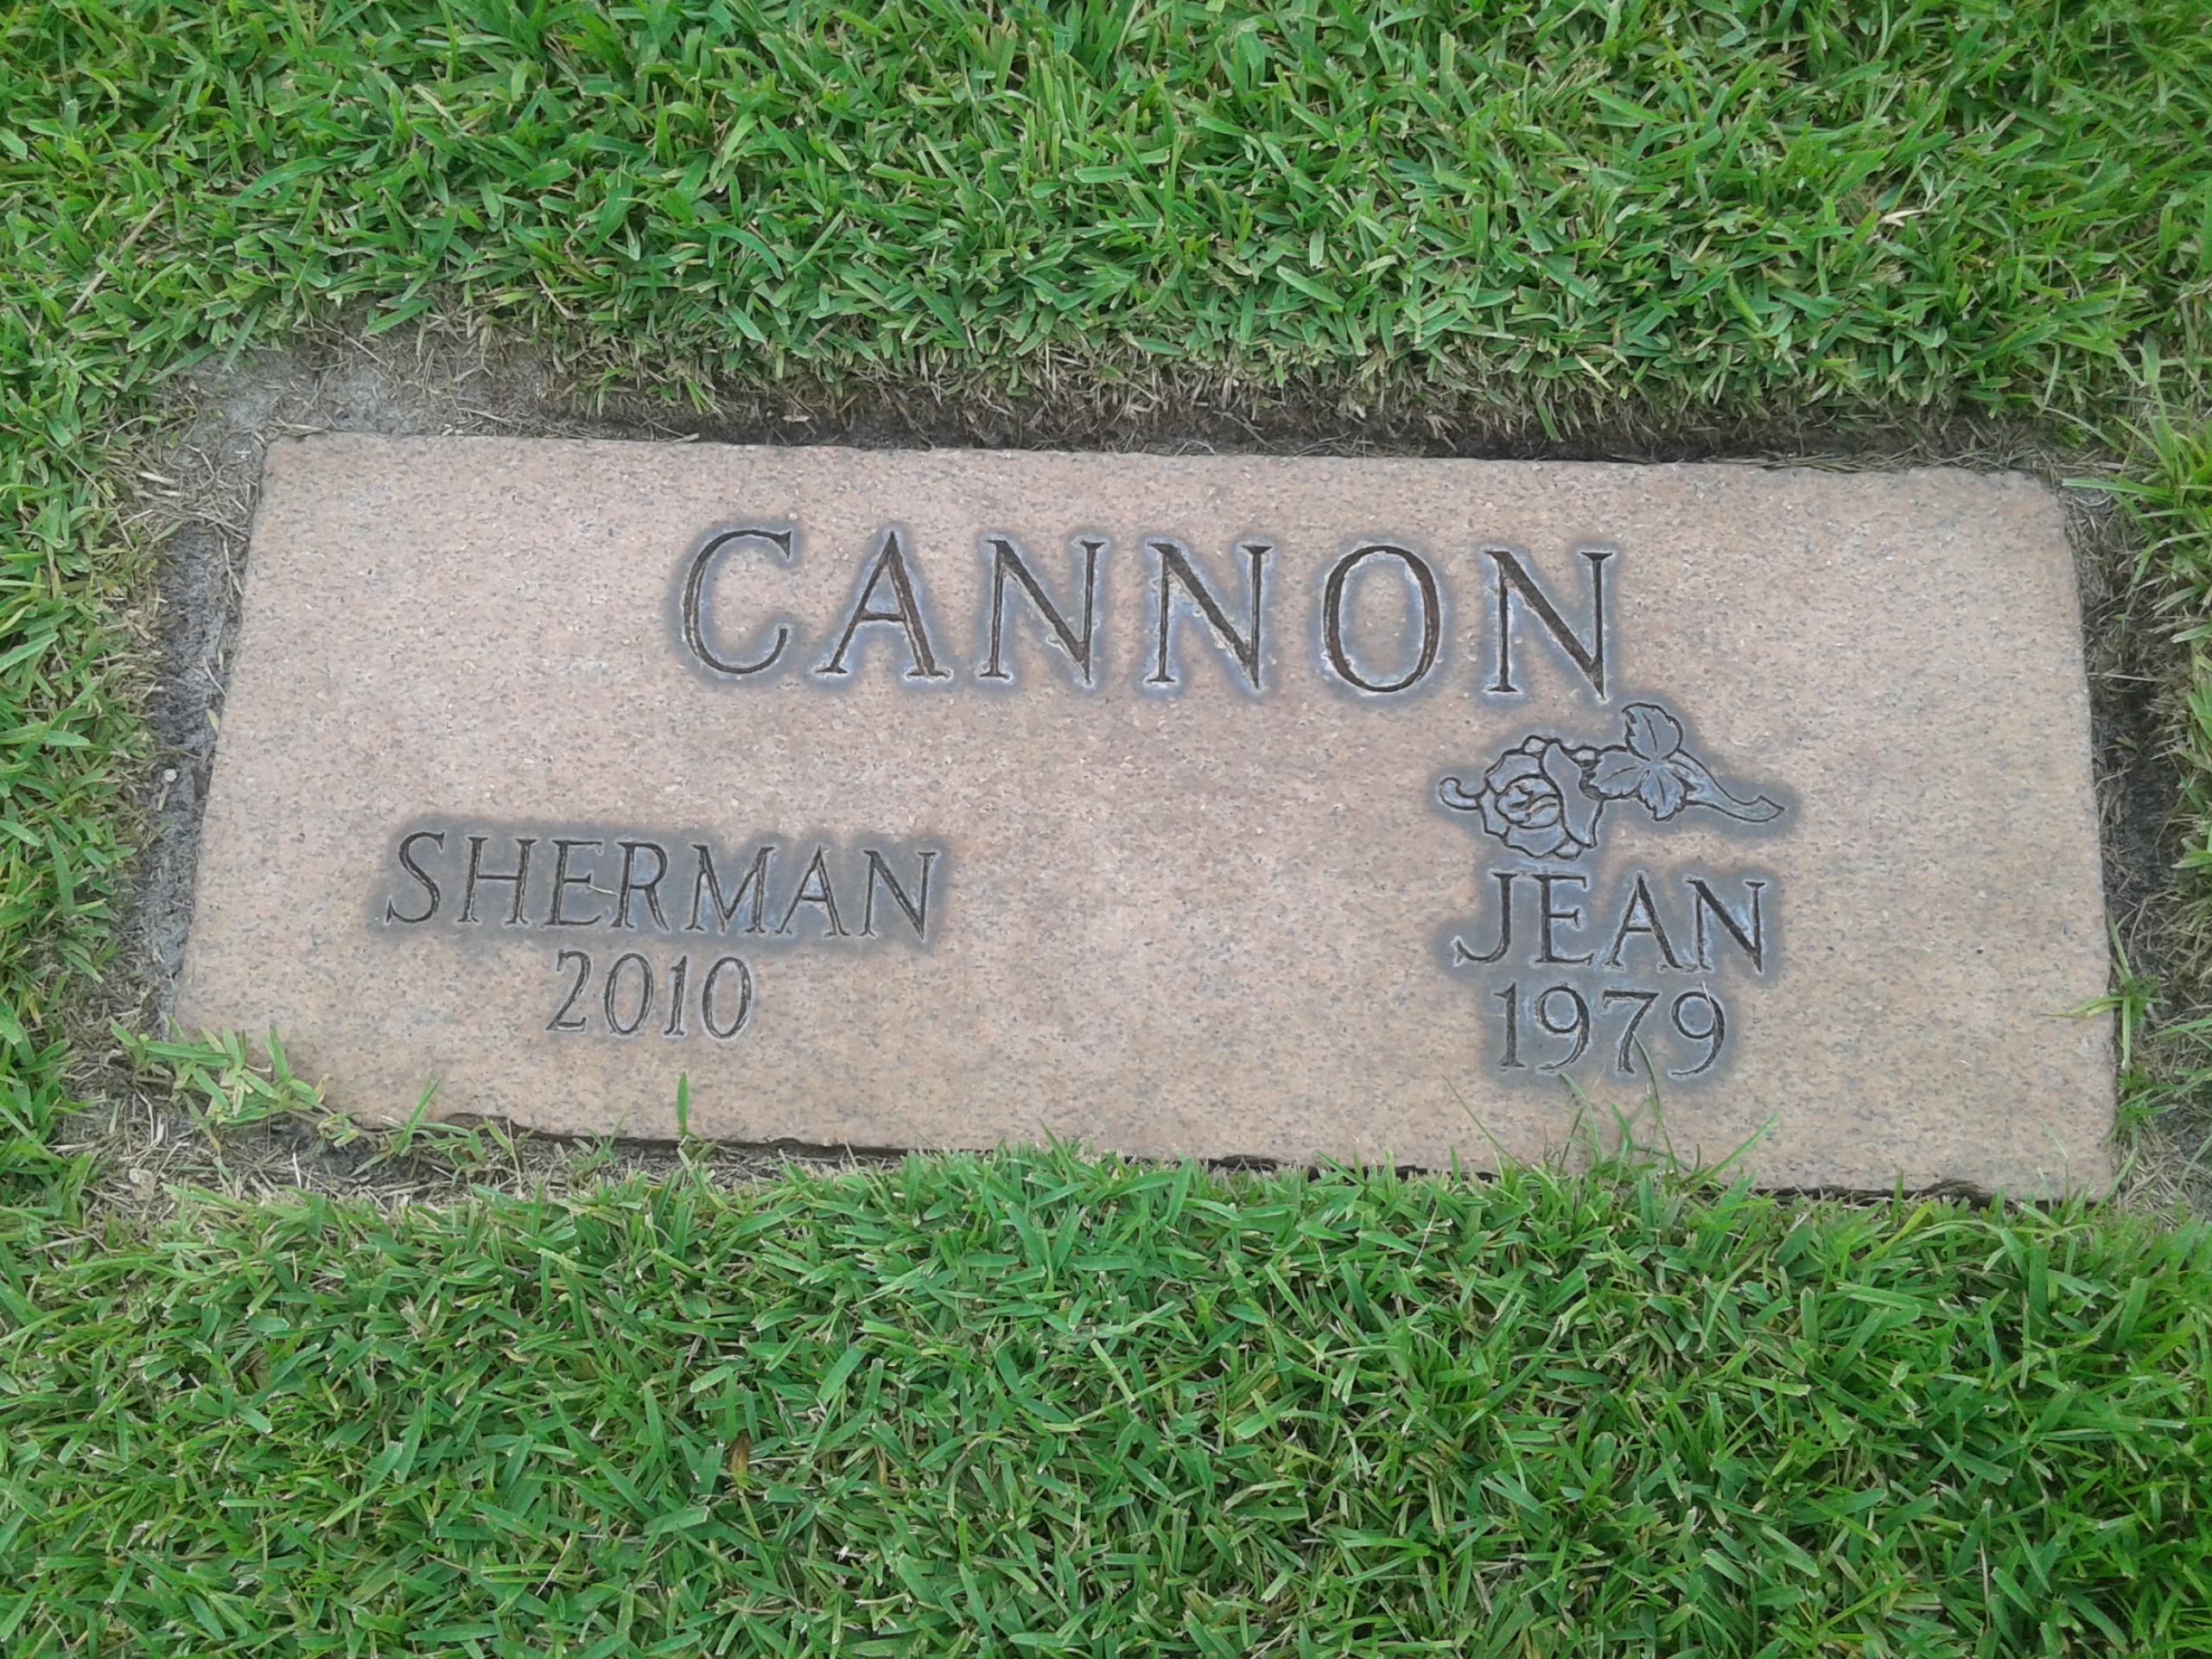 Sherman Cannon